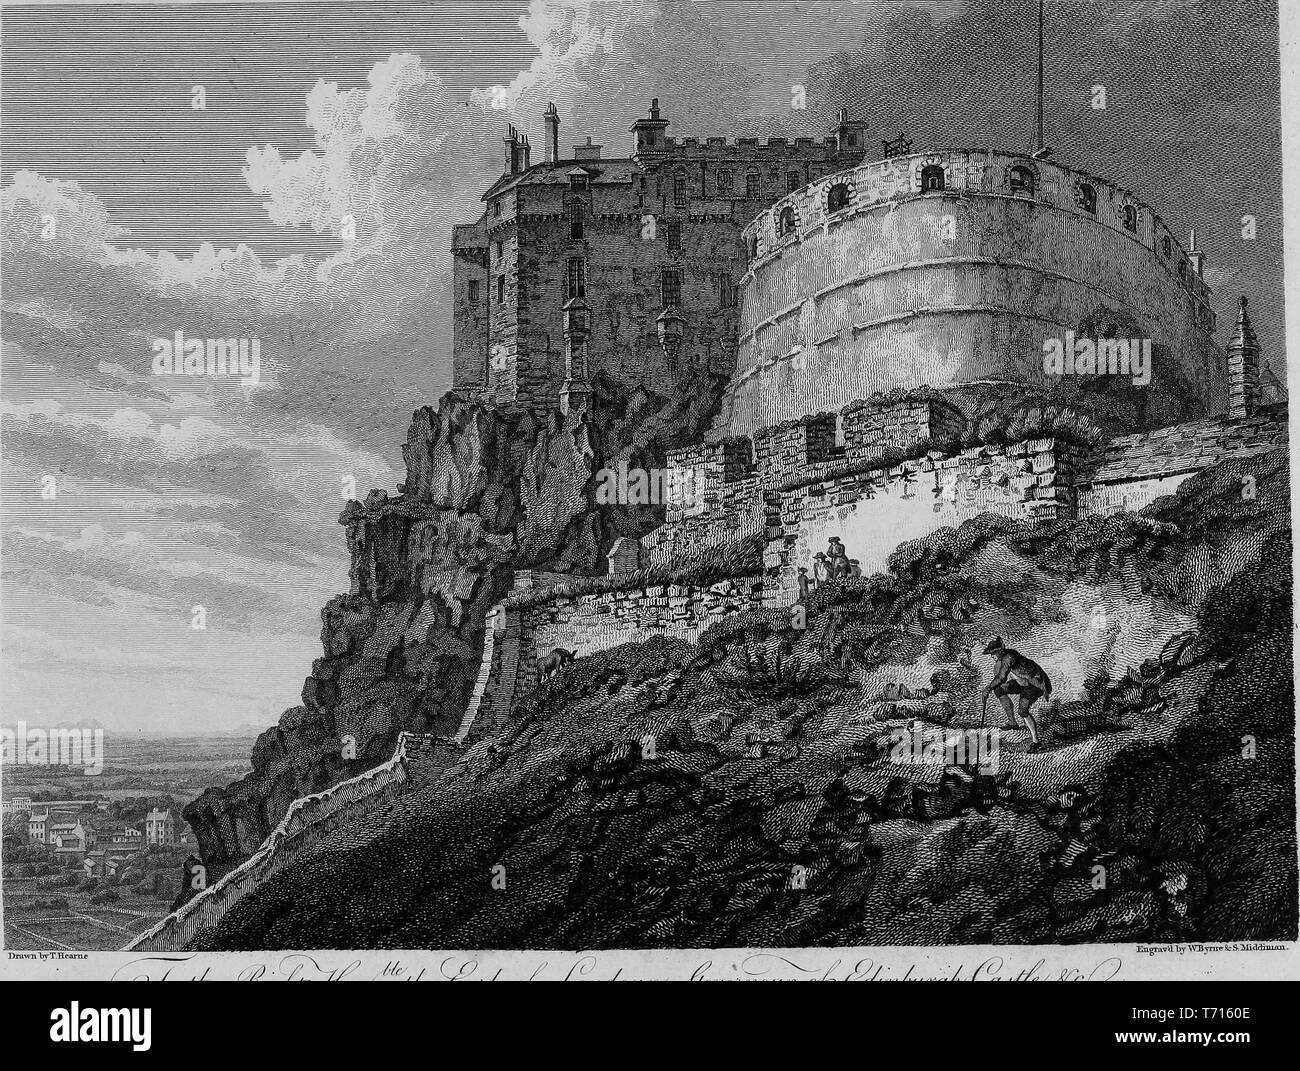 Incisione del Castello di Edimburgo sul castello di roccia, Edimburgo, Scozia, dal libro "Antichità di Gran Bretagna' da William Byrne e Thomas Hearne, 1825. La cortesia Internet Archive. () Foto Stock